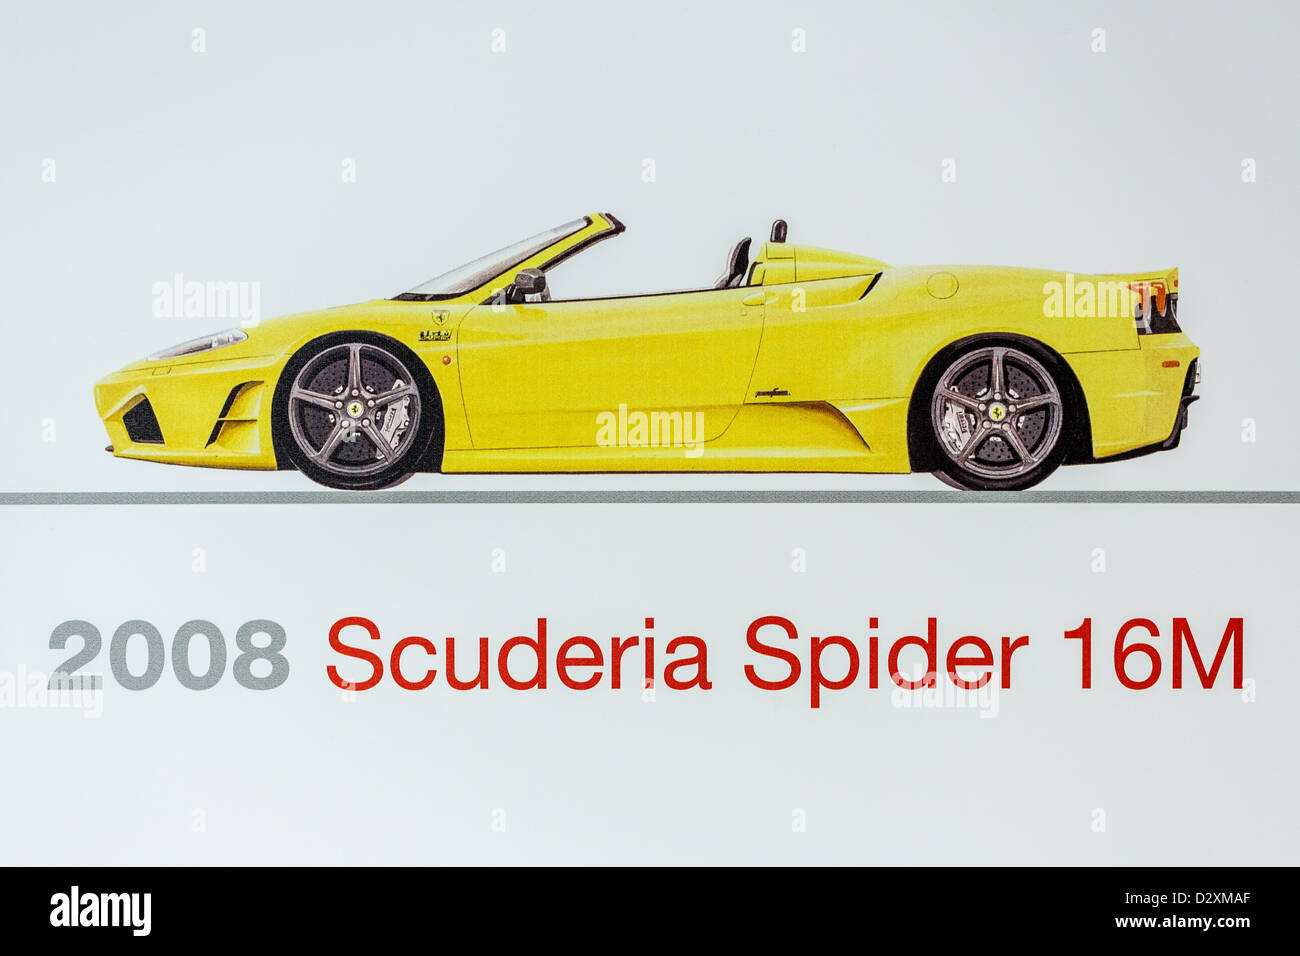 Graphic representation of a 2008 Ferrari Scuderia Spider 16M, Ferrari Museum, Maranello, Italy Stock Photo